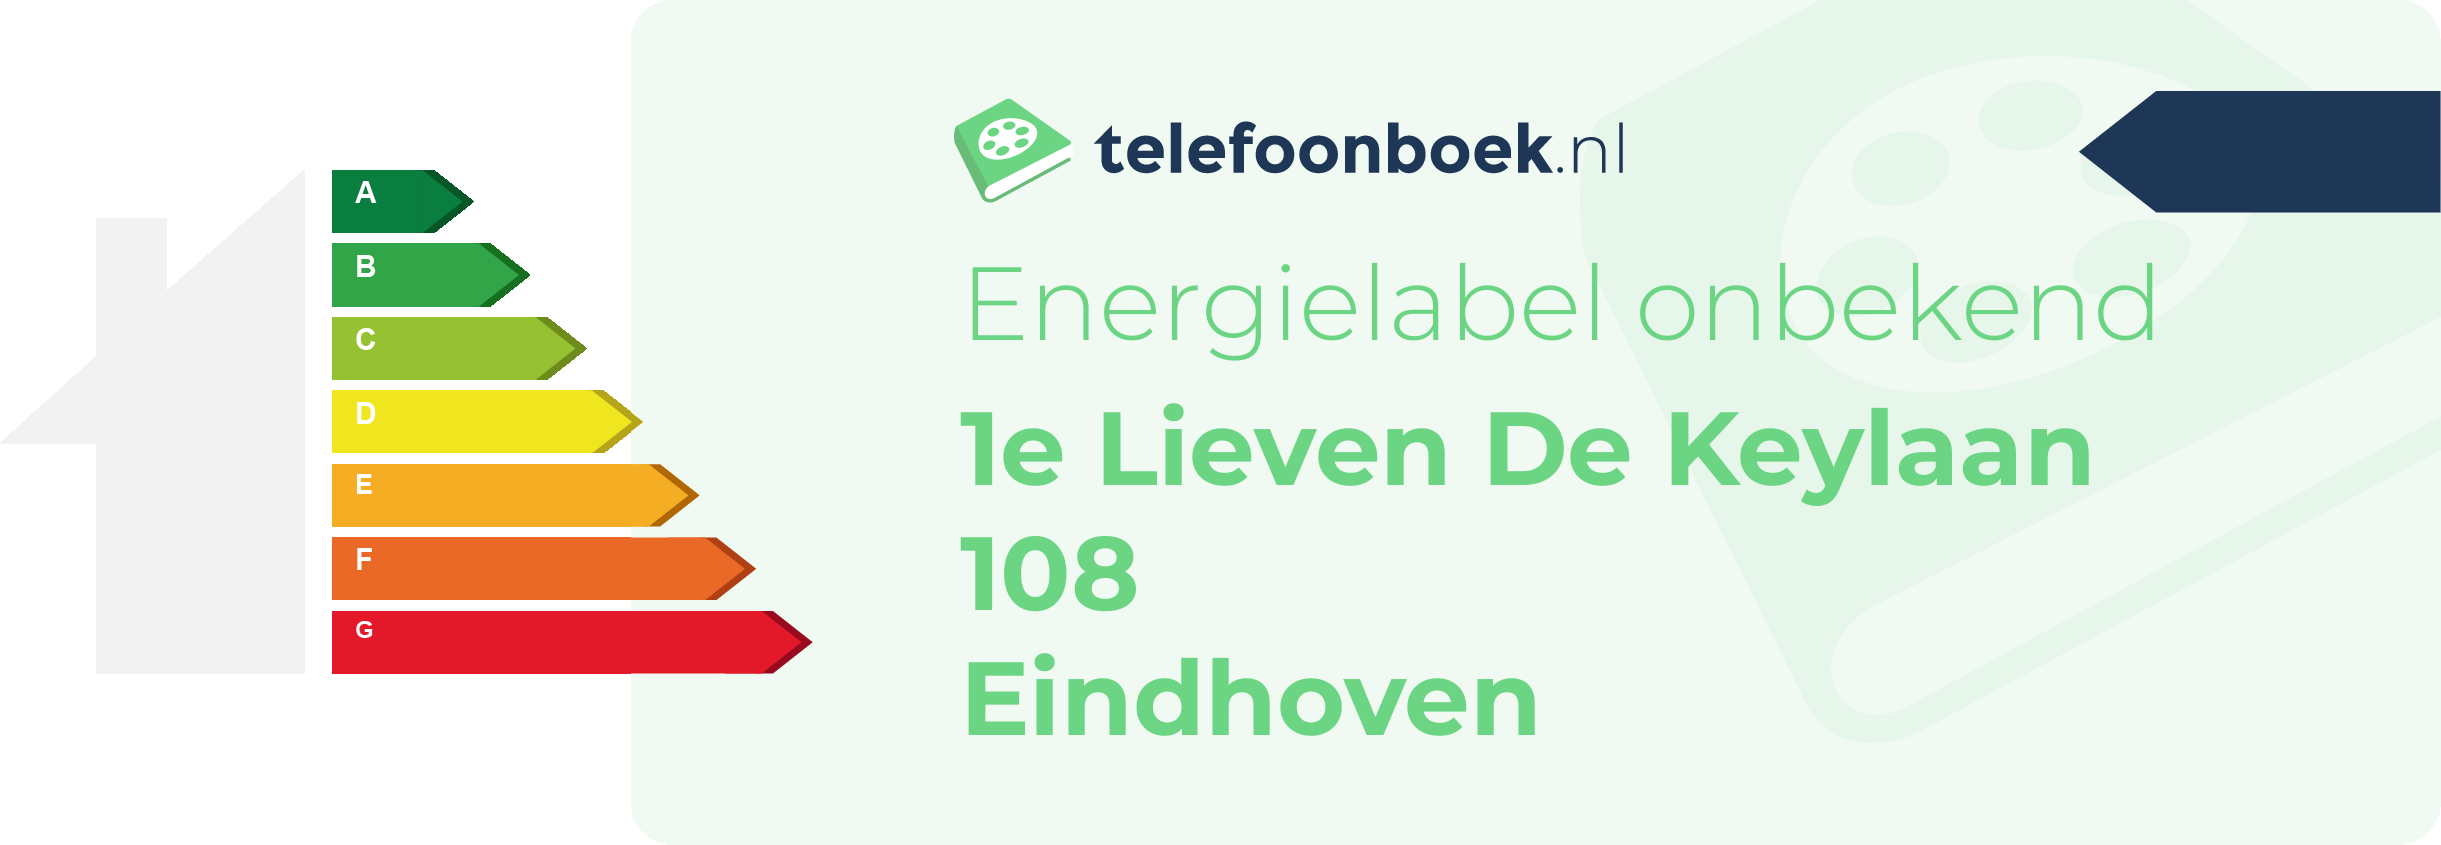 Energielabel 1e Lieven De Keylaan 108 Eindhoven